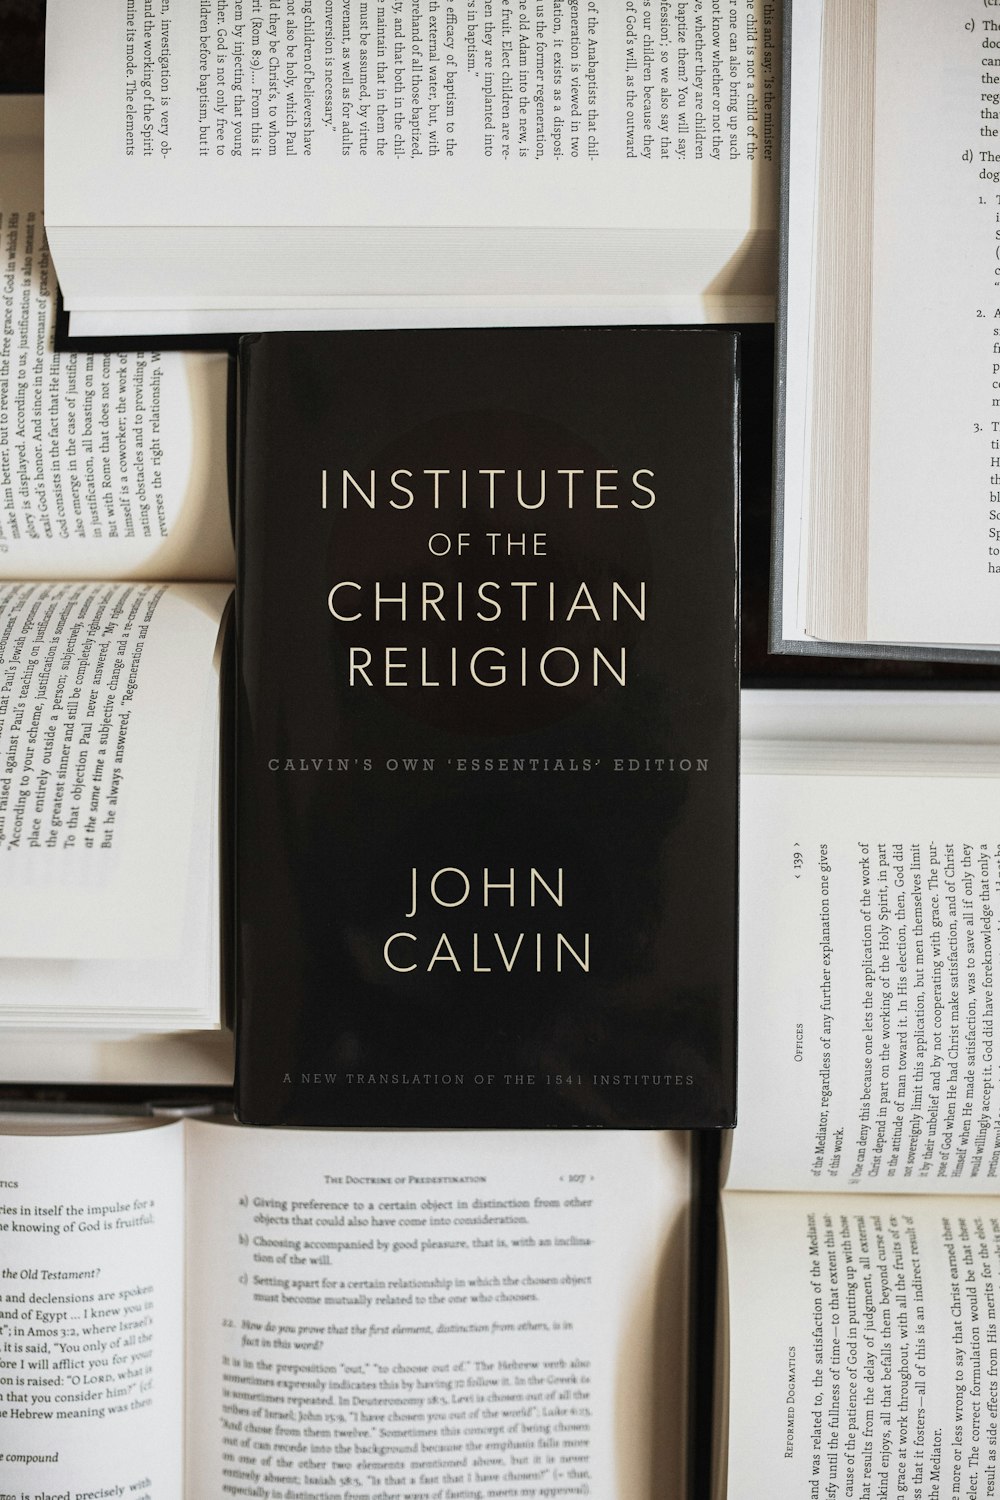 기독교 종교 연구소(Institutes of the Christian Religion) 저자 존 칼빈(John Calvin) 책